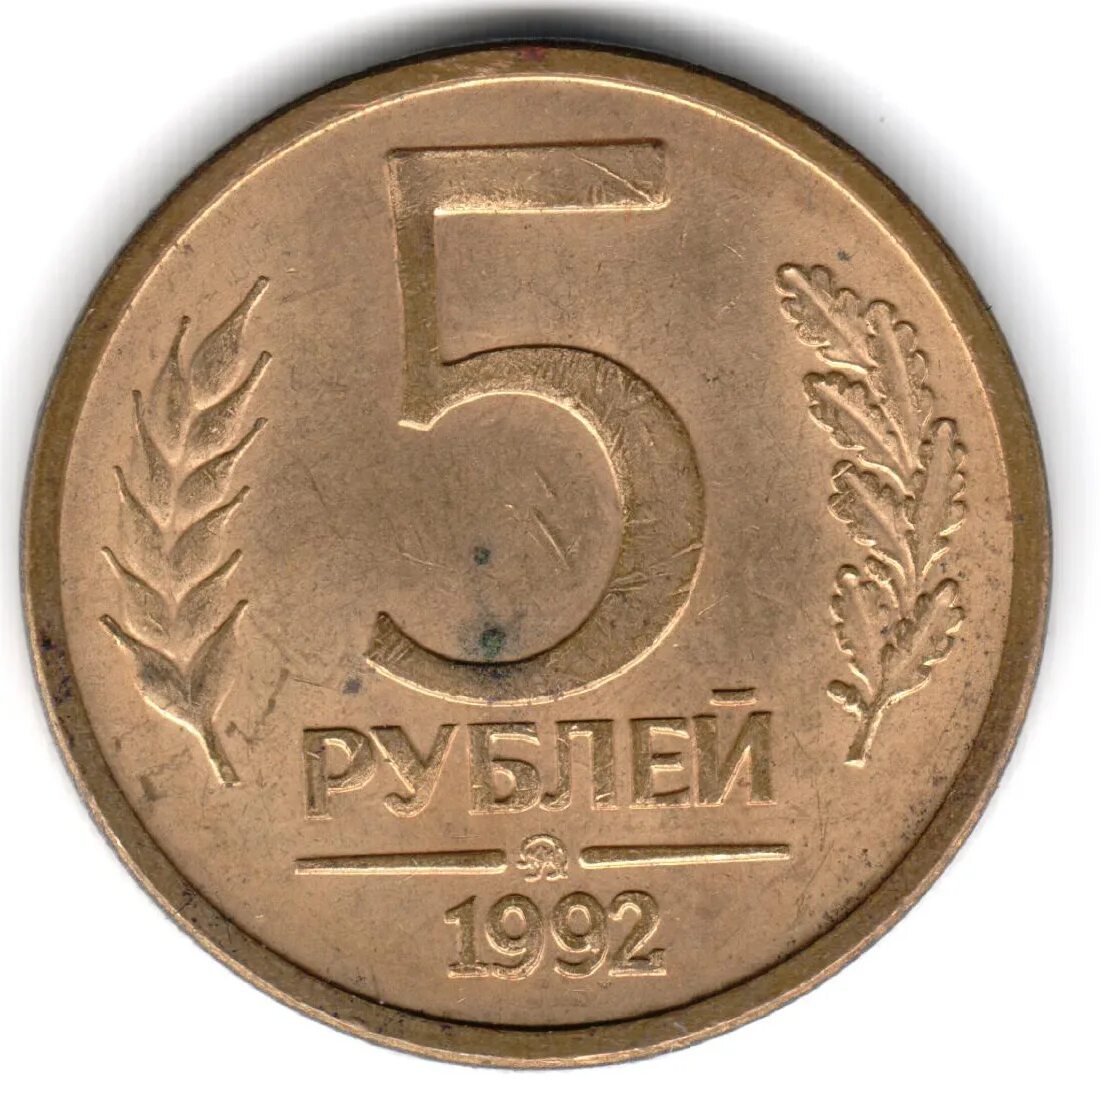 5 Рублей 1992 года. Монеты СССР 1992. 5 Руб 1992 года. Монета 5 рублей 1992